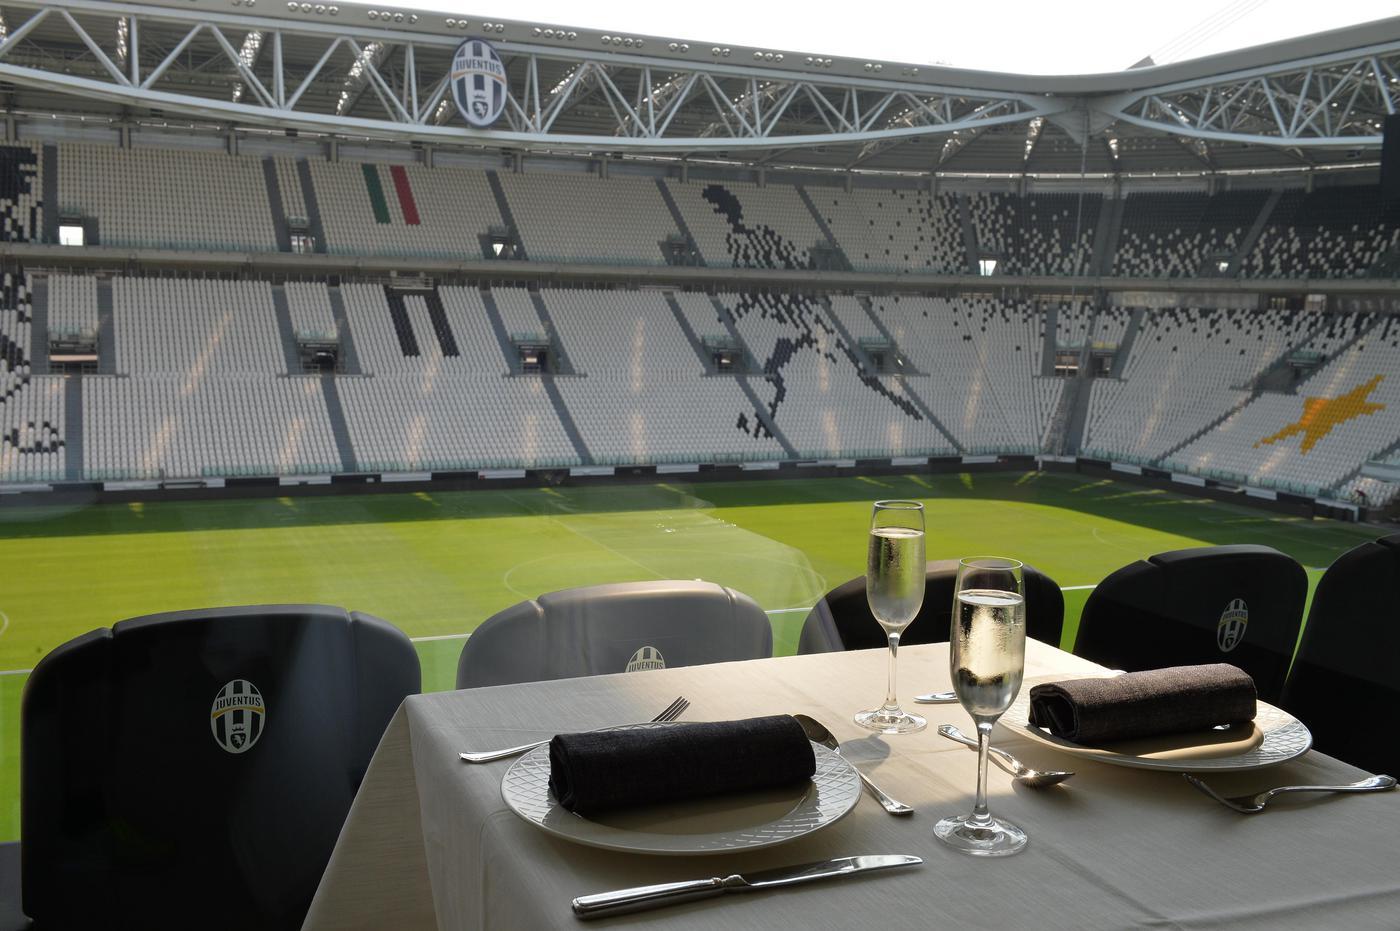 Incassi Juventus Stadium 13/14